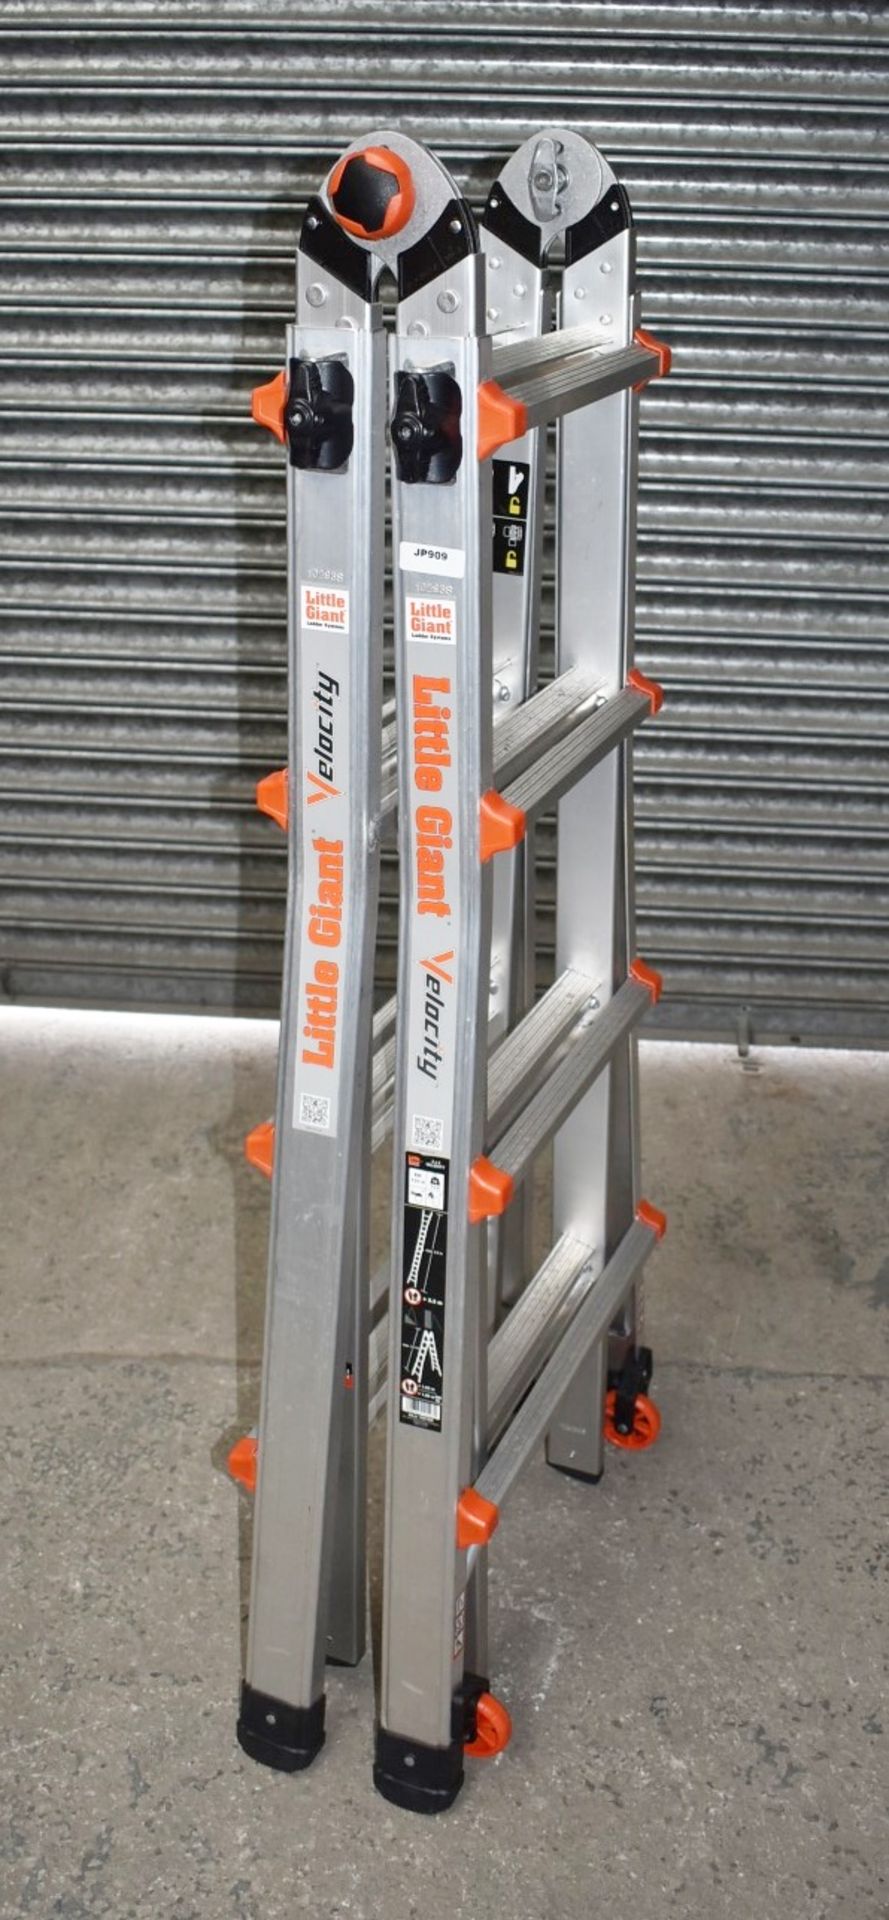 1 x Little Giant 4 Step Multipurpose Velocity Ladder - Type 15417EN - Ref: JP909 GITW - CL732 - - Image 5 of 15